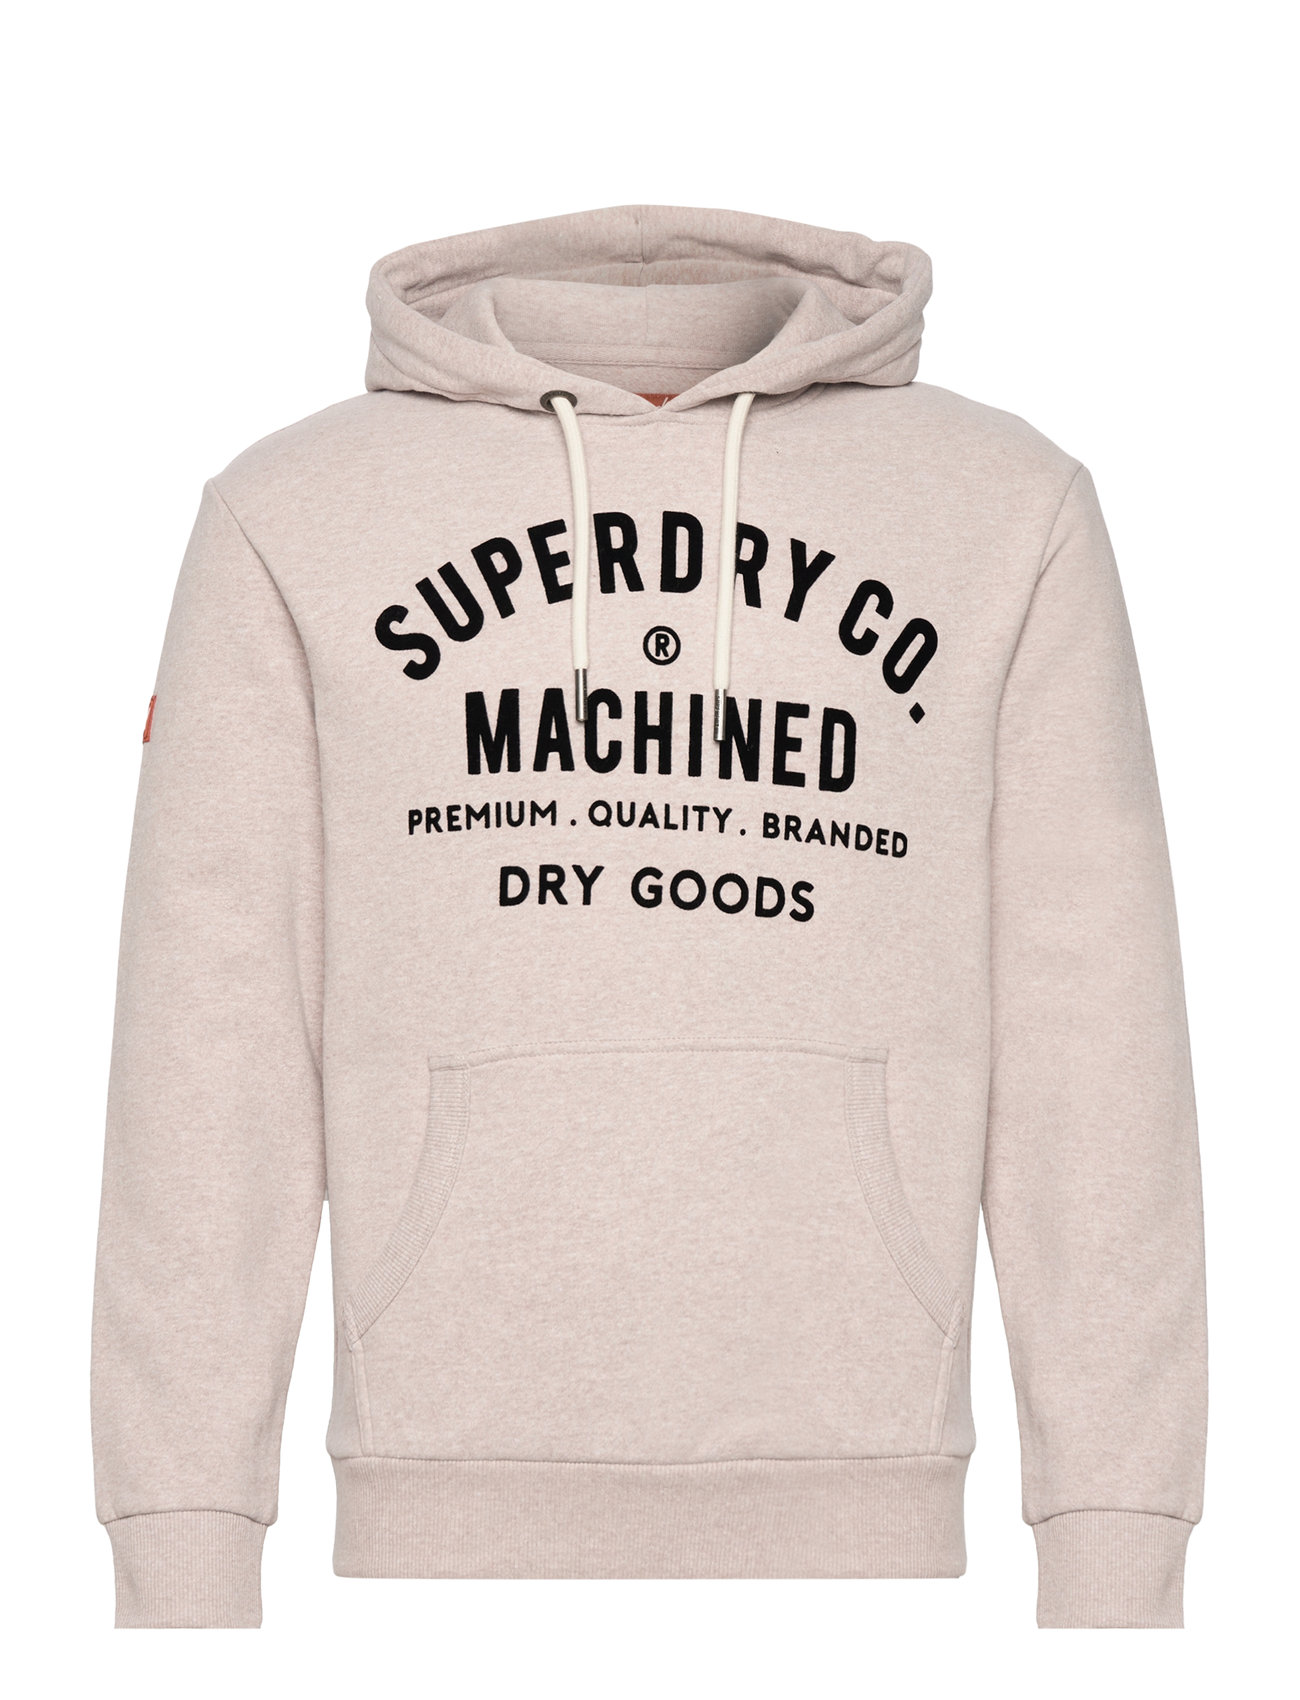 Workwear Flock Graphic Hoodie Tops Sweatshirts & Hoodies Beige Superdry